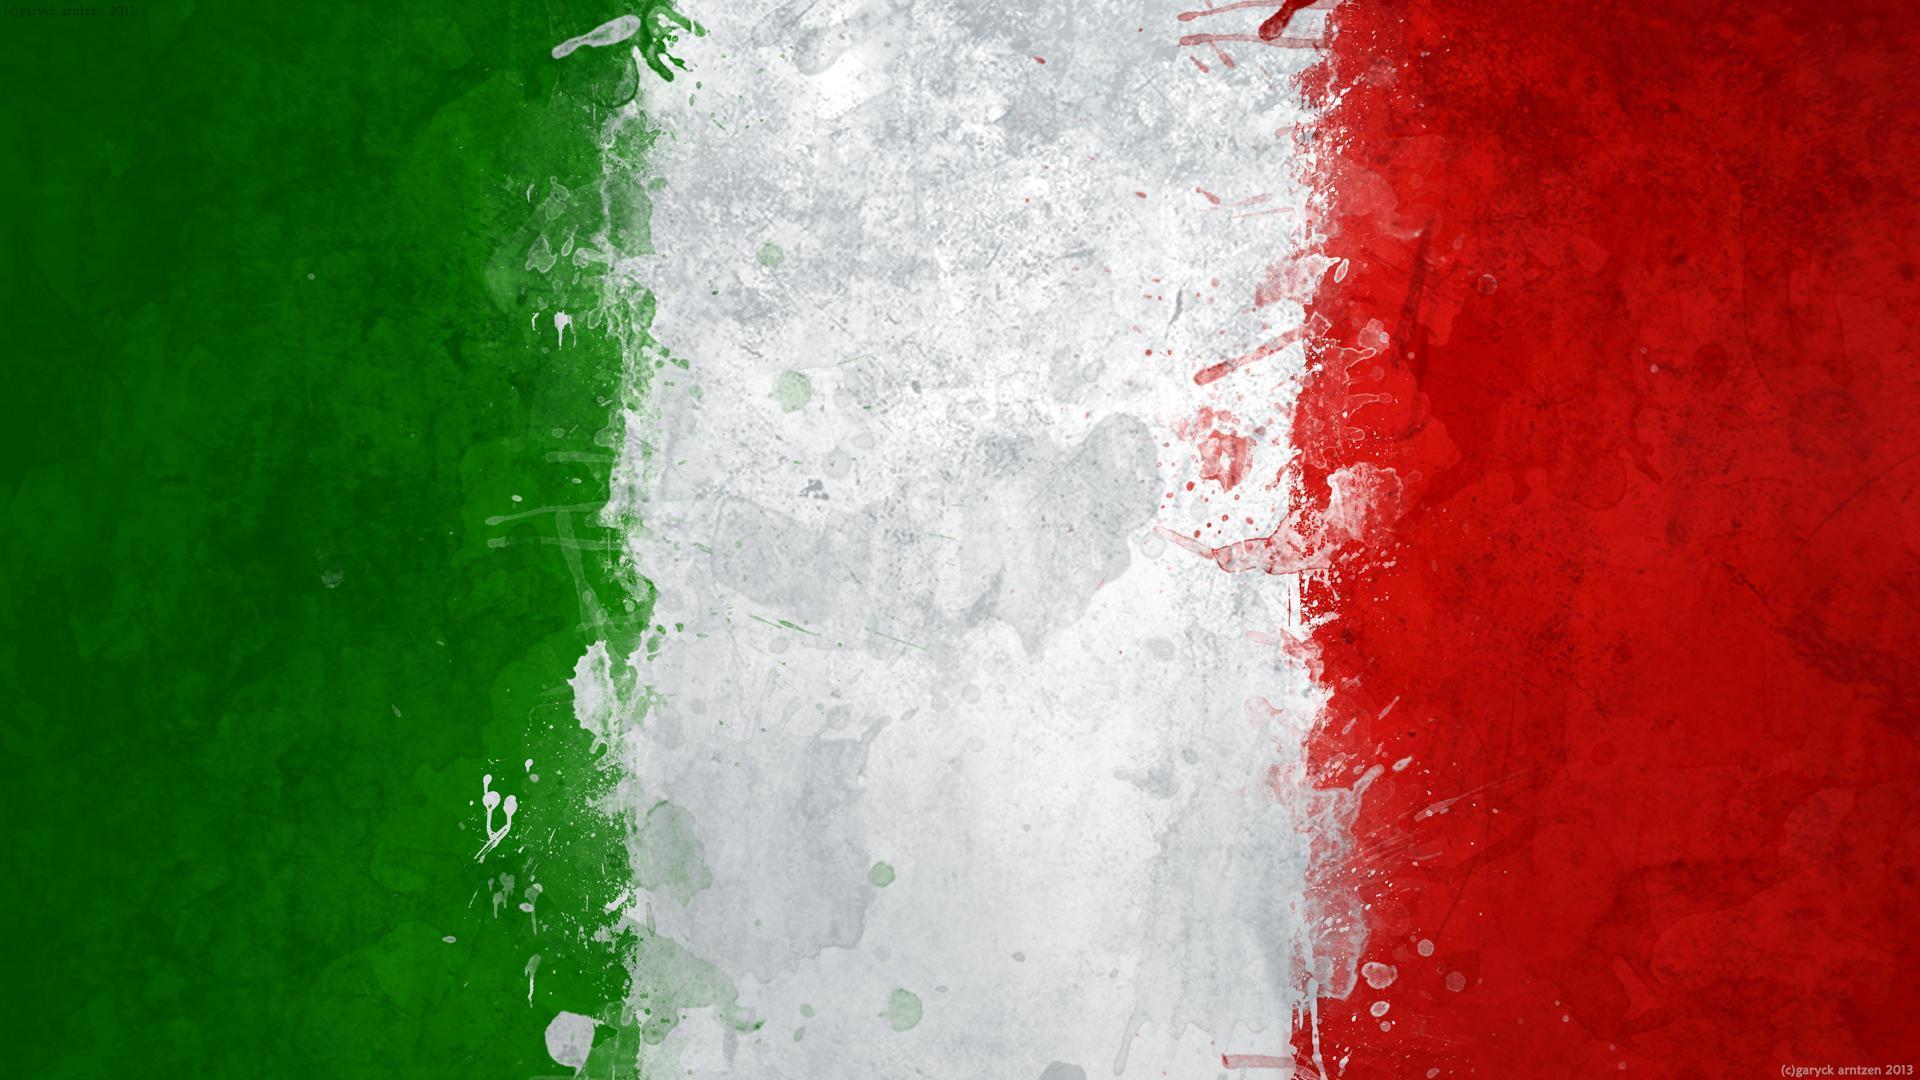 World Cup Italy Flag HD desktop wallpaper, Widescreen, High